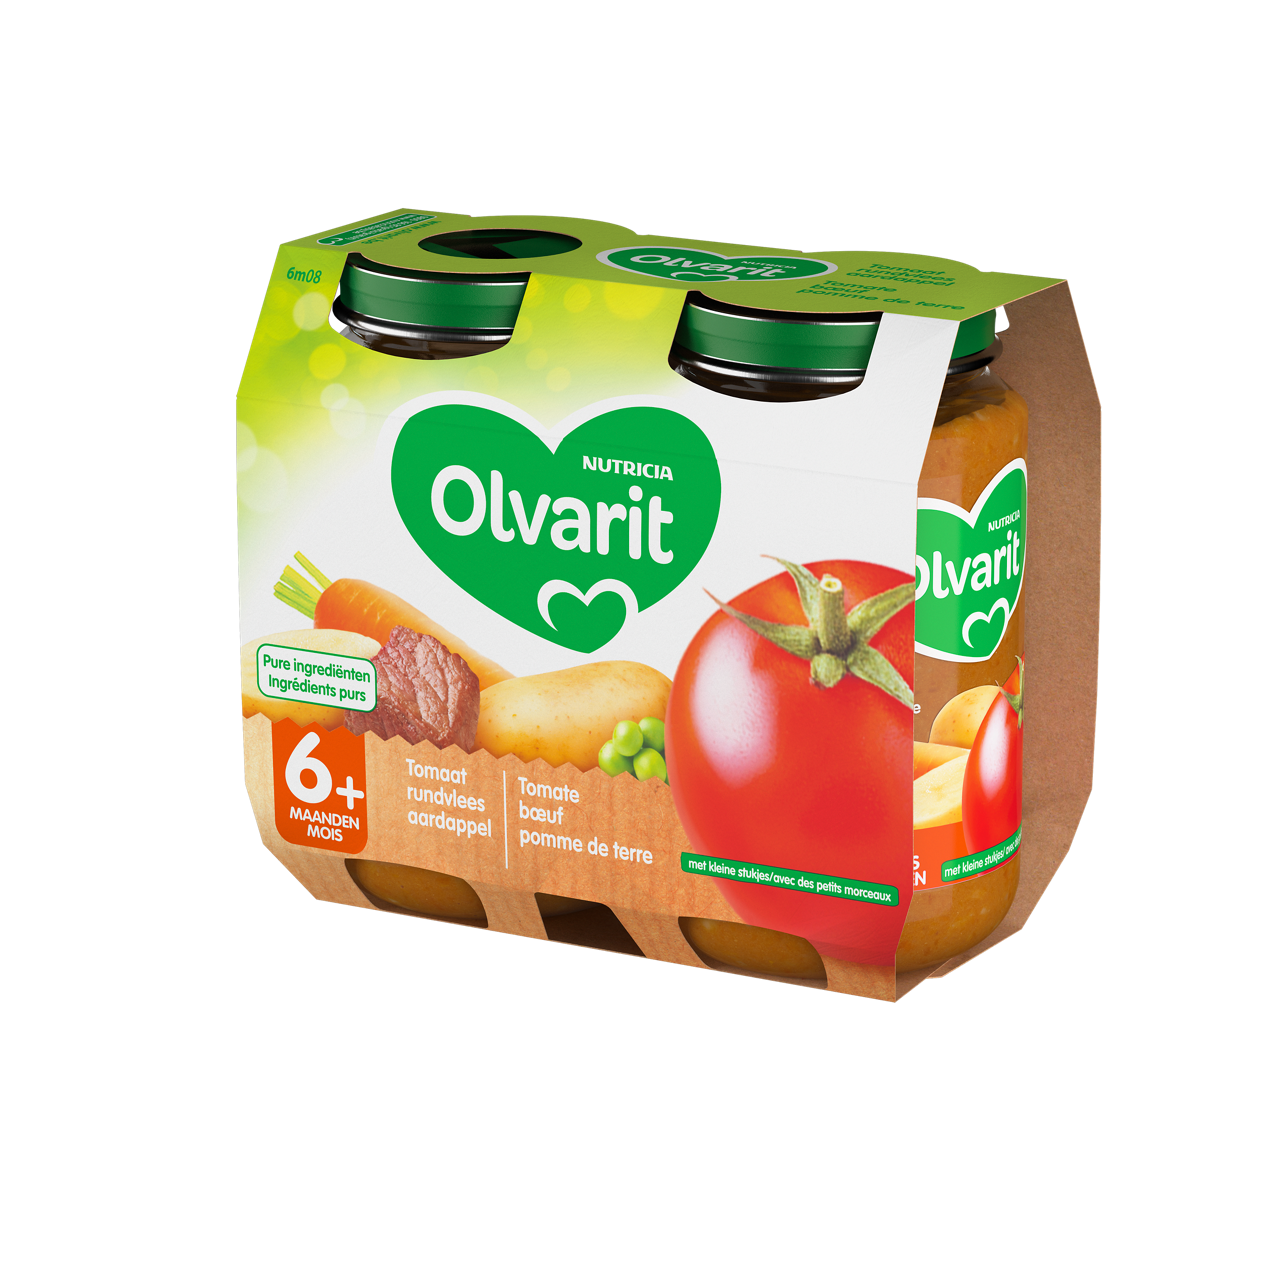 Olvarit Tomate boeuf pomme de terre. Consultez notre site web Olvarit.be pour plus d'info sur alimentation pour bébé et les produits Olvarit.